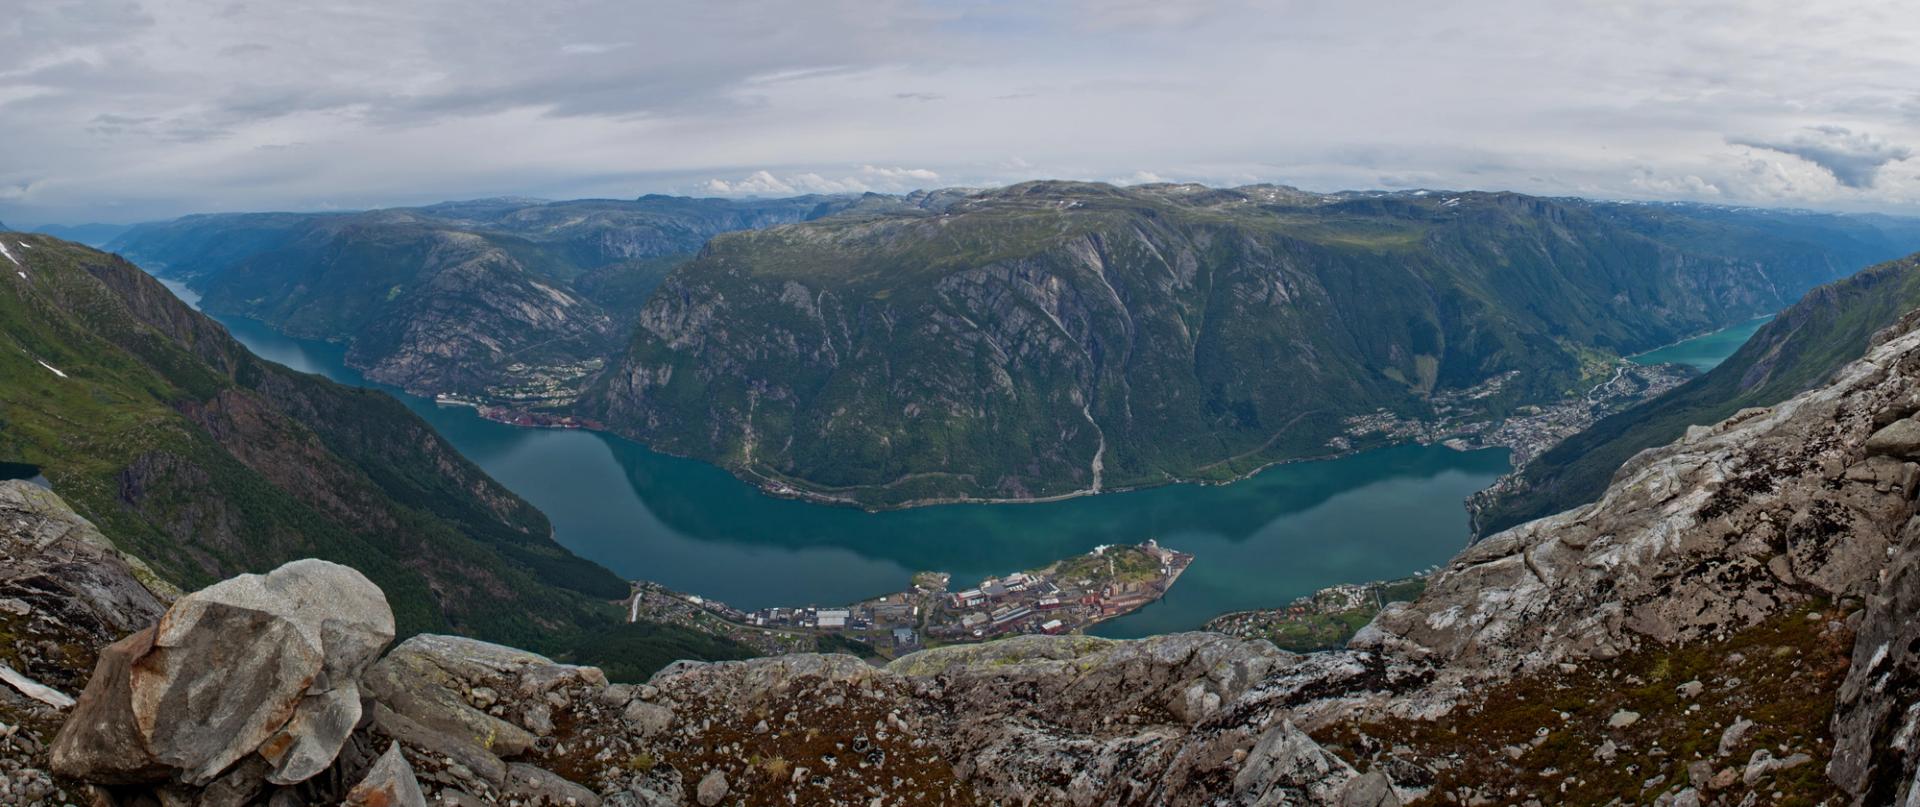 View of Sørfjorden from Tokheimsnuten mountain, Hardanger.